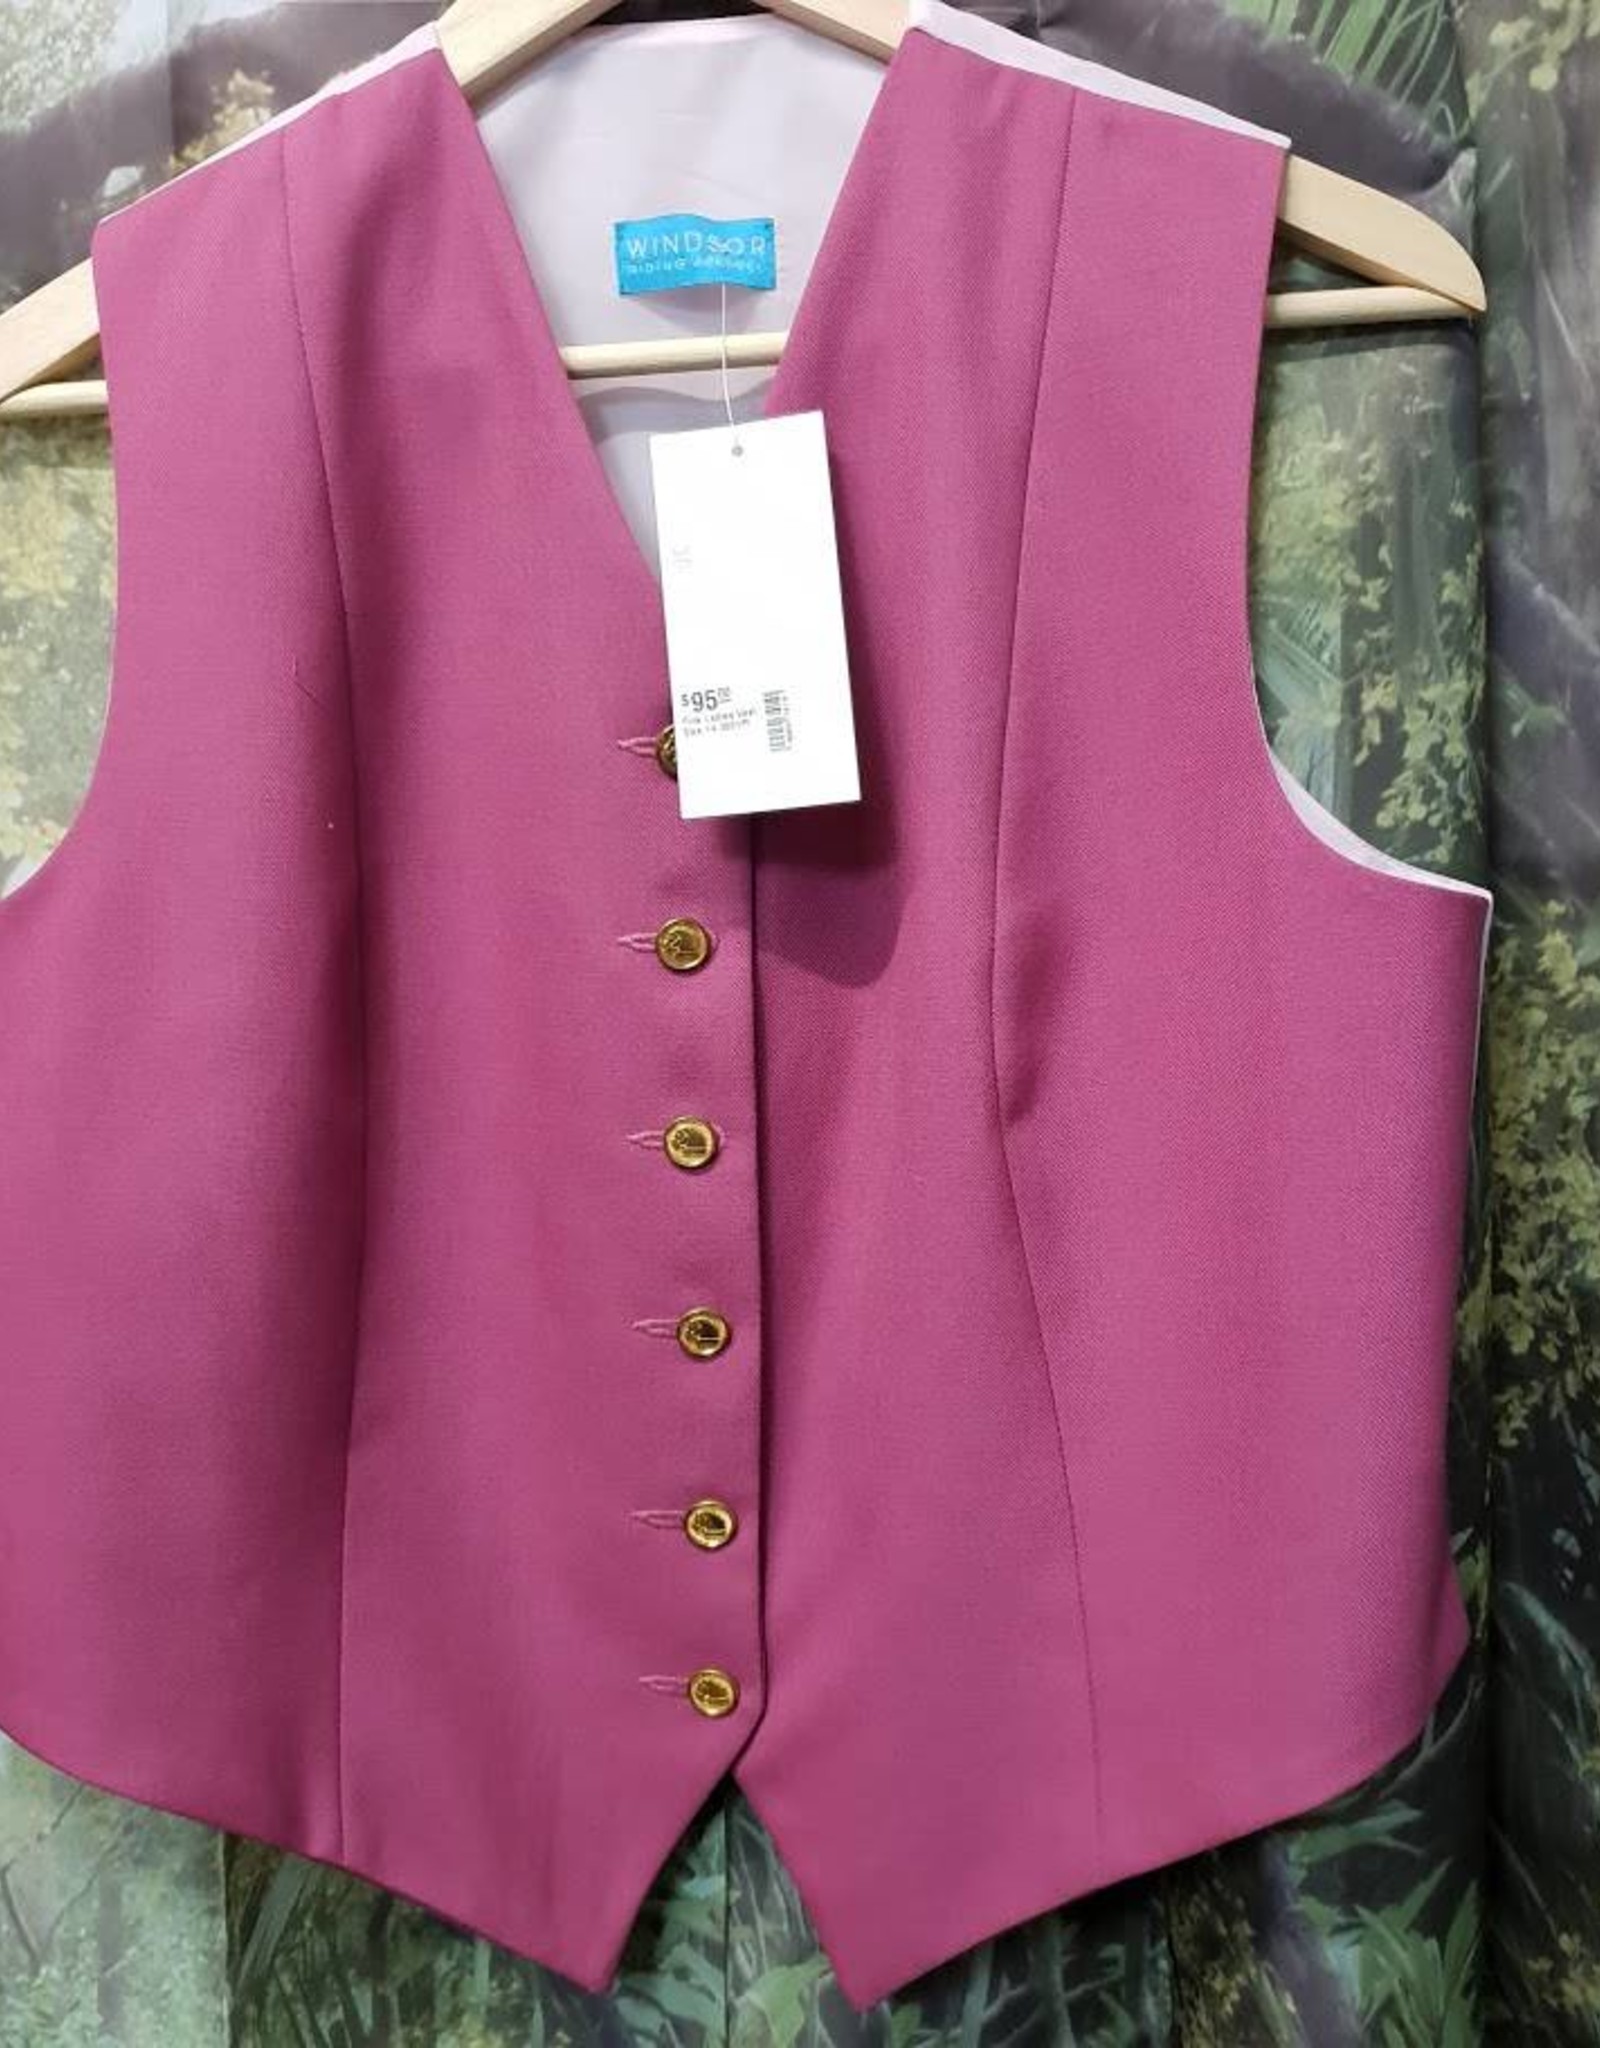 Windsor Apparel Ladies Vest - Pink - Size 14